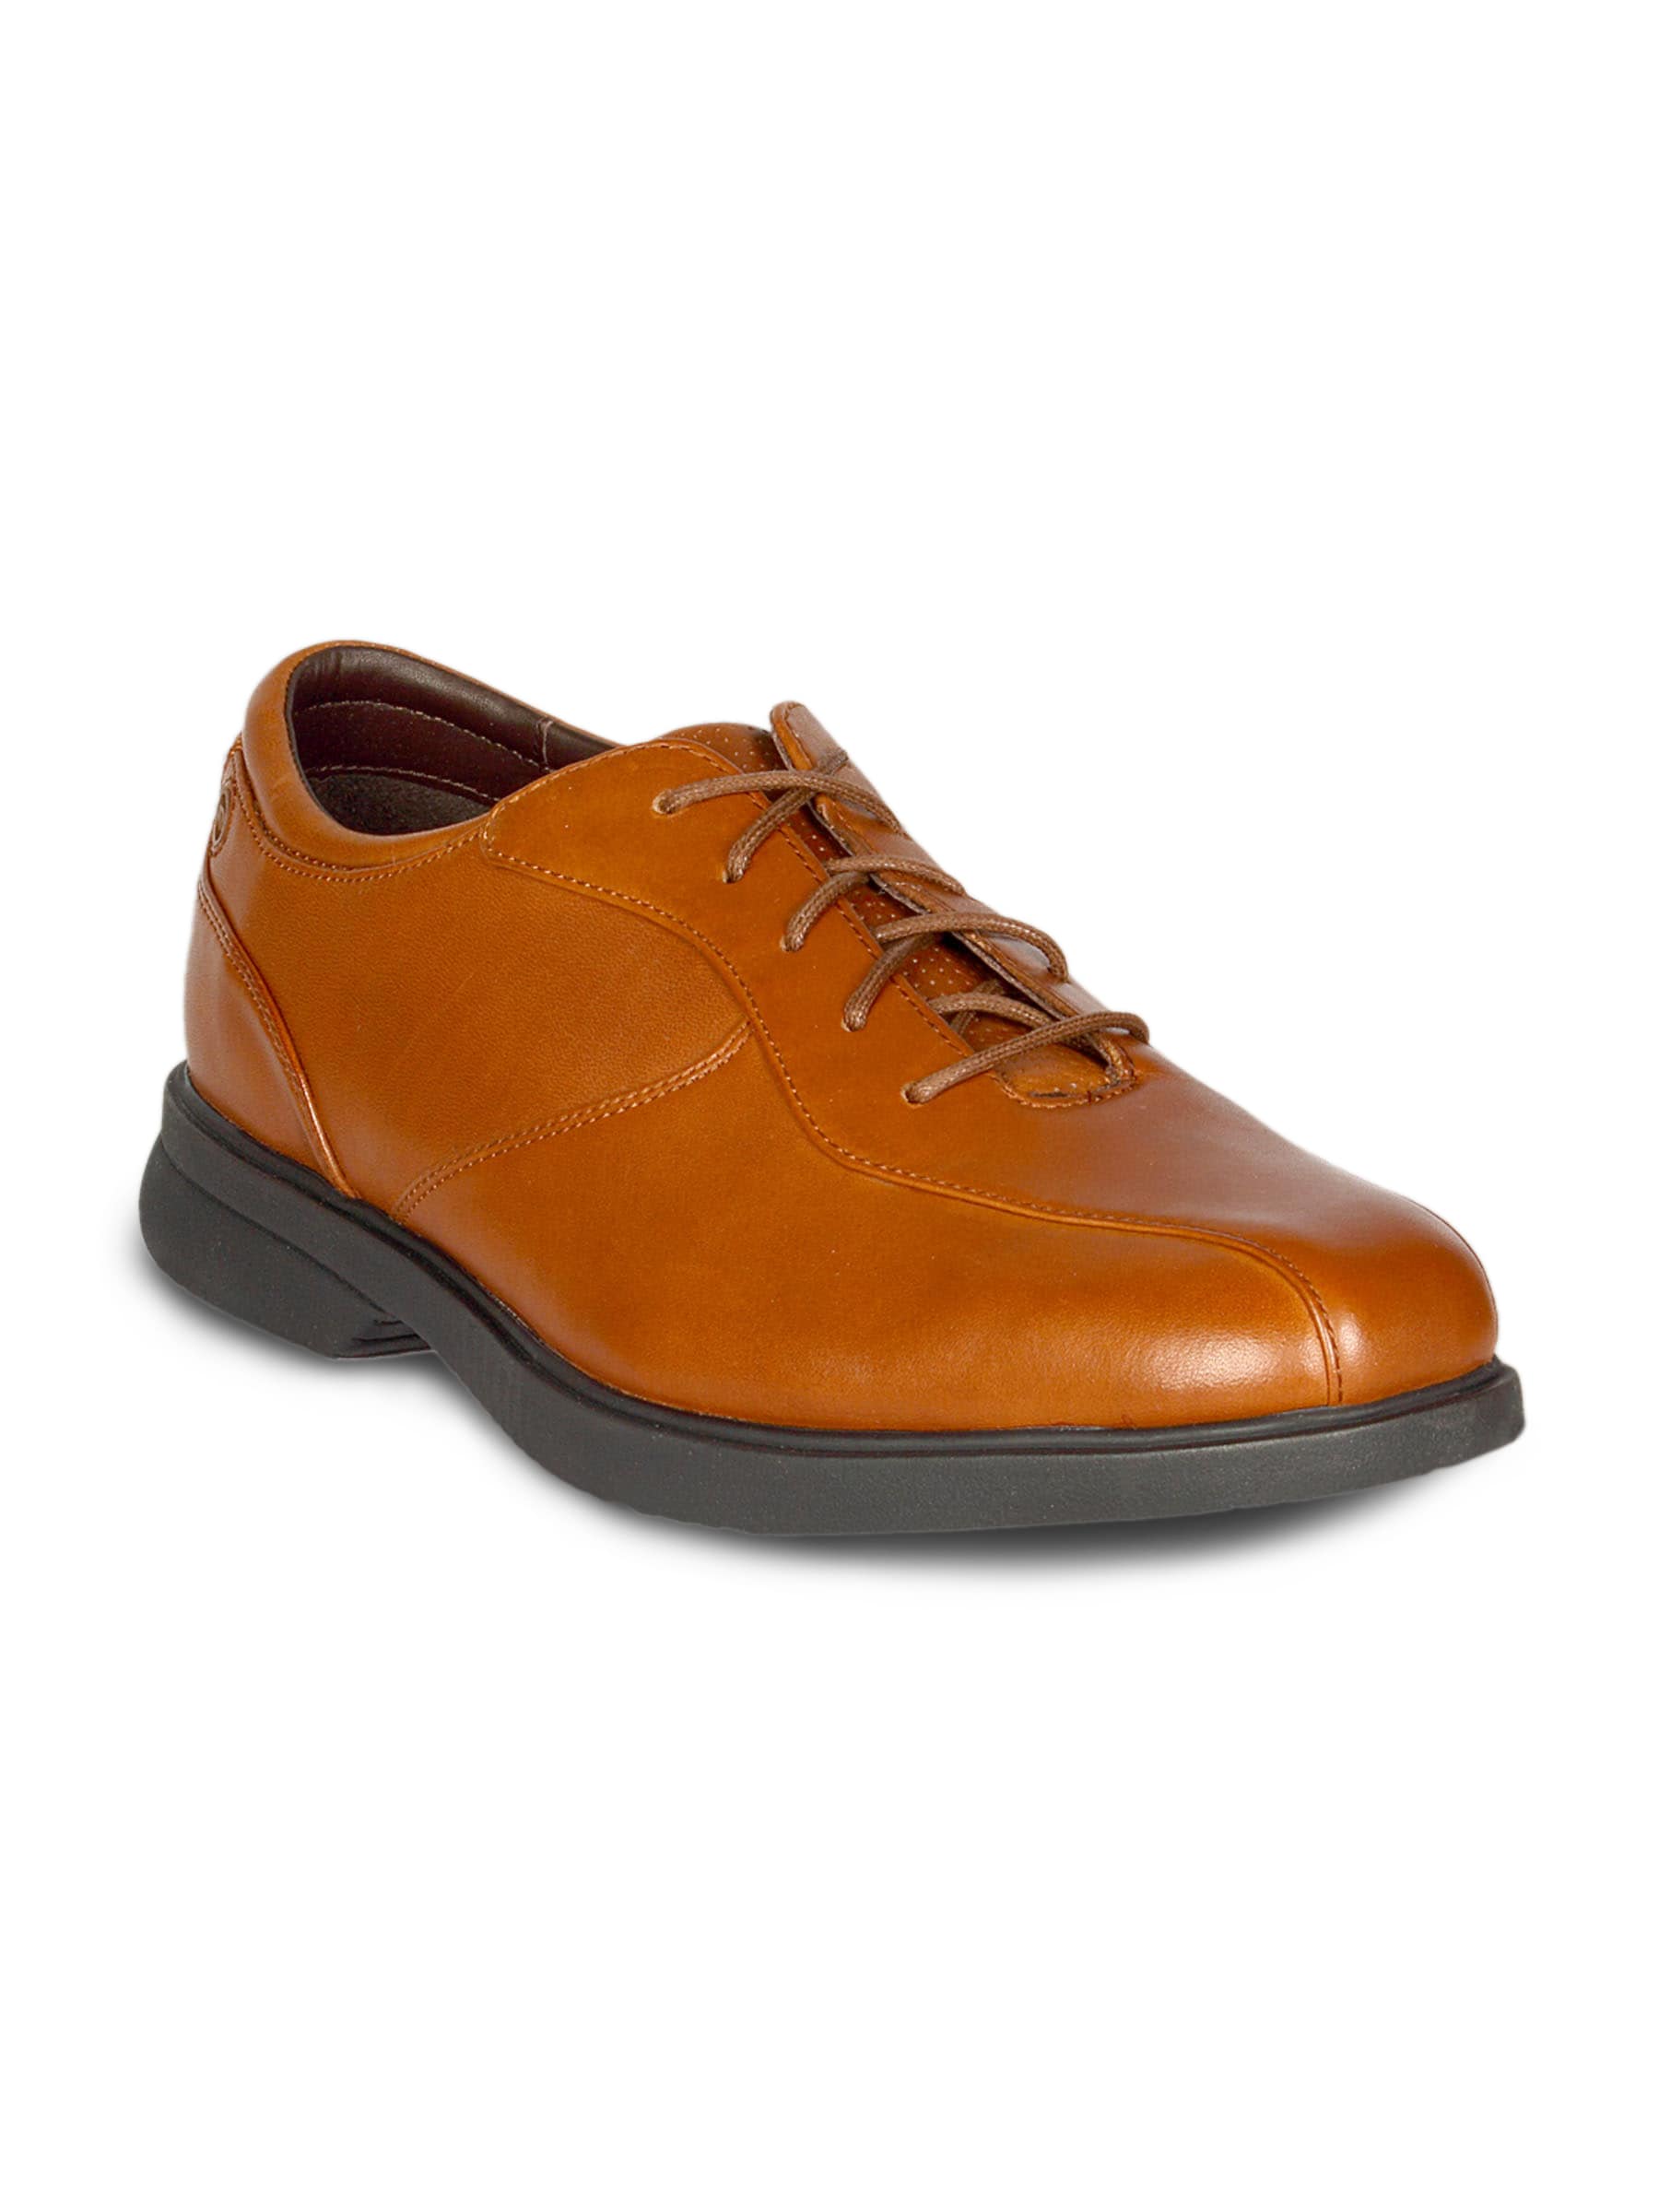 Rockport Men's Alduna Brown Shoe